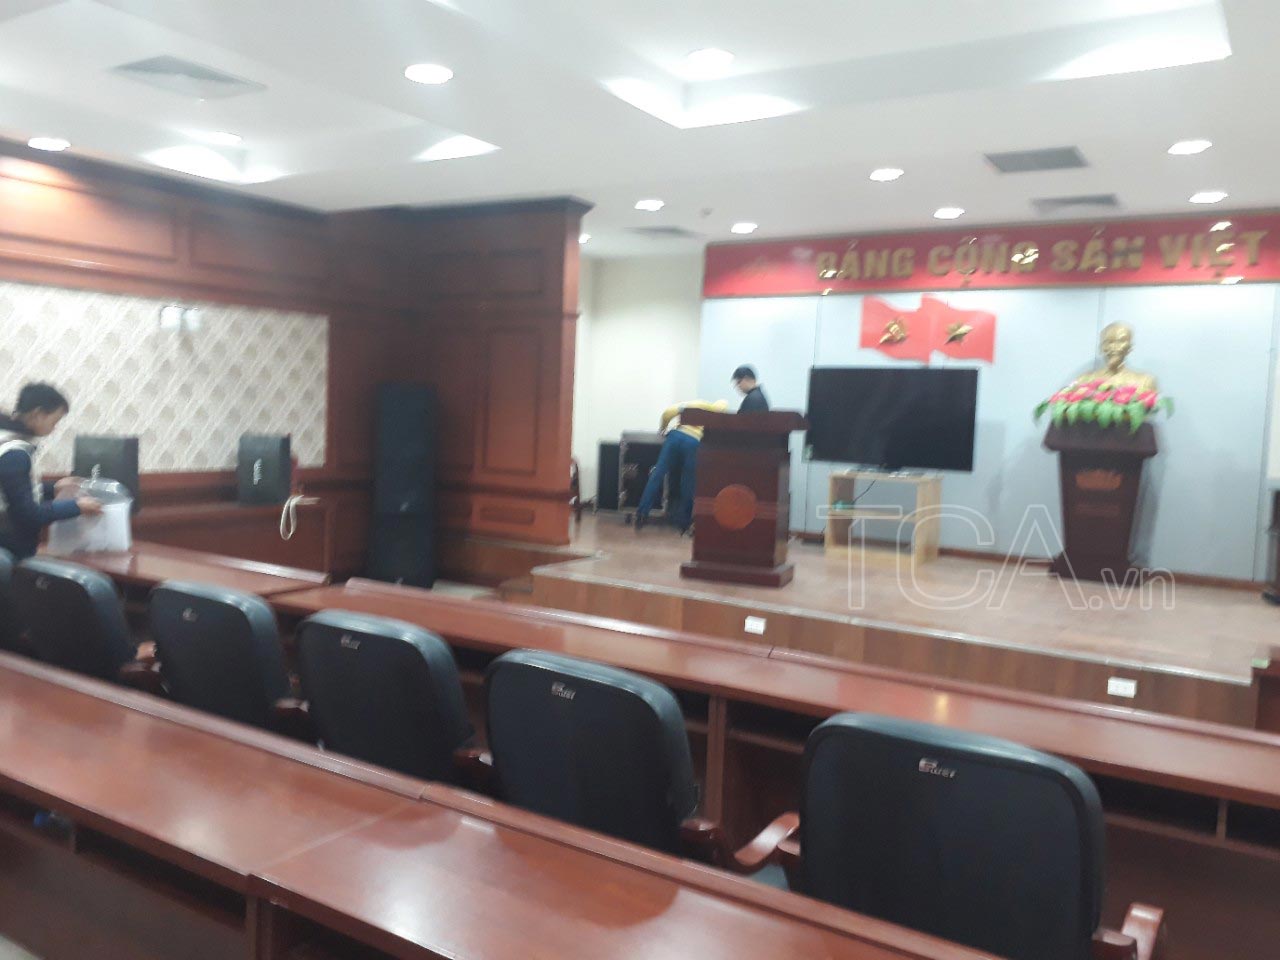 âm thanh phòng họp hội trường – chi cục thuế huyện Ứng Hòa, Hà Nội